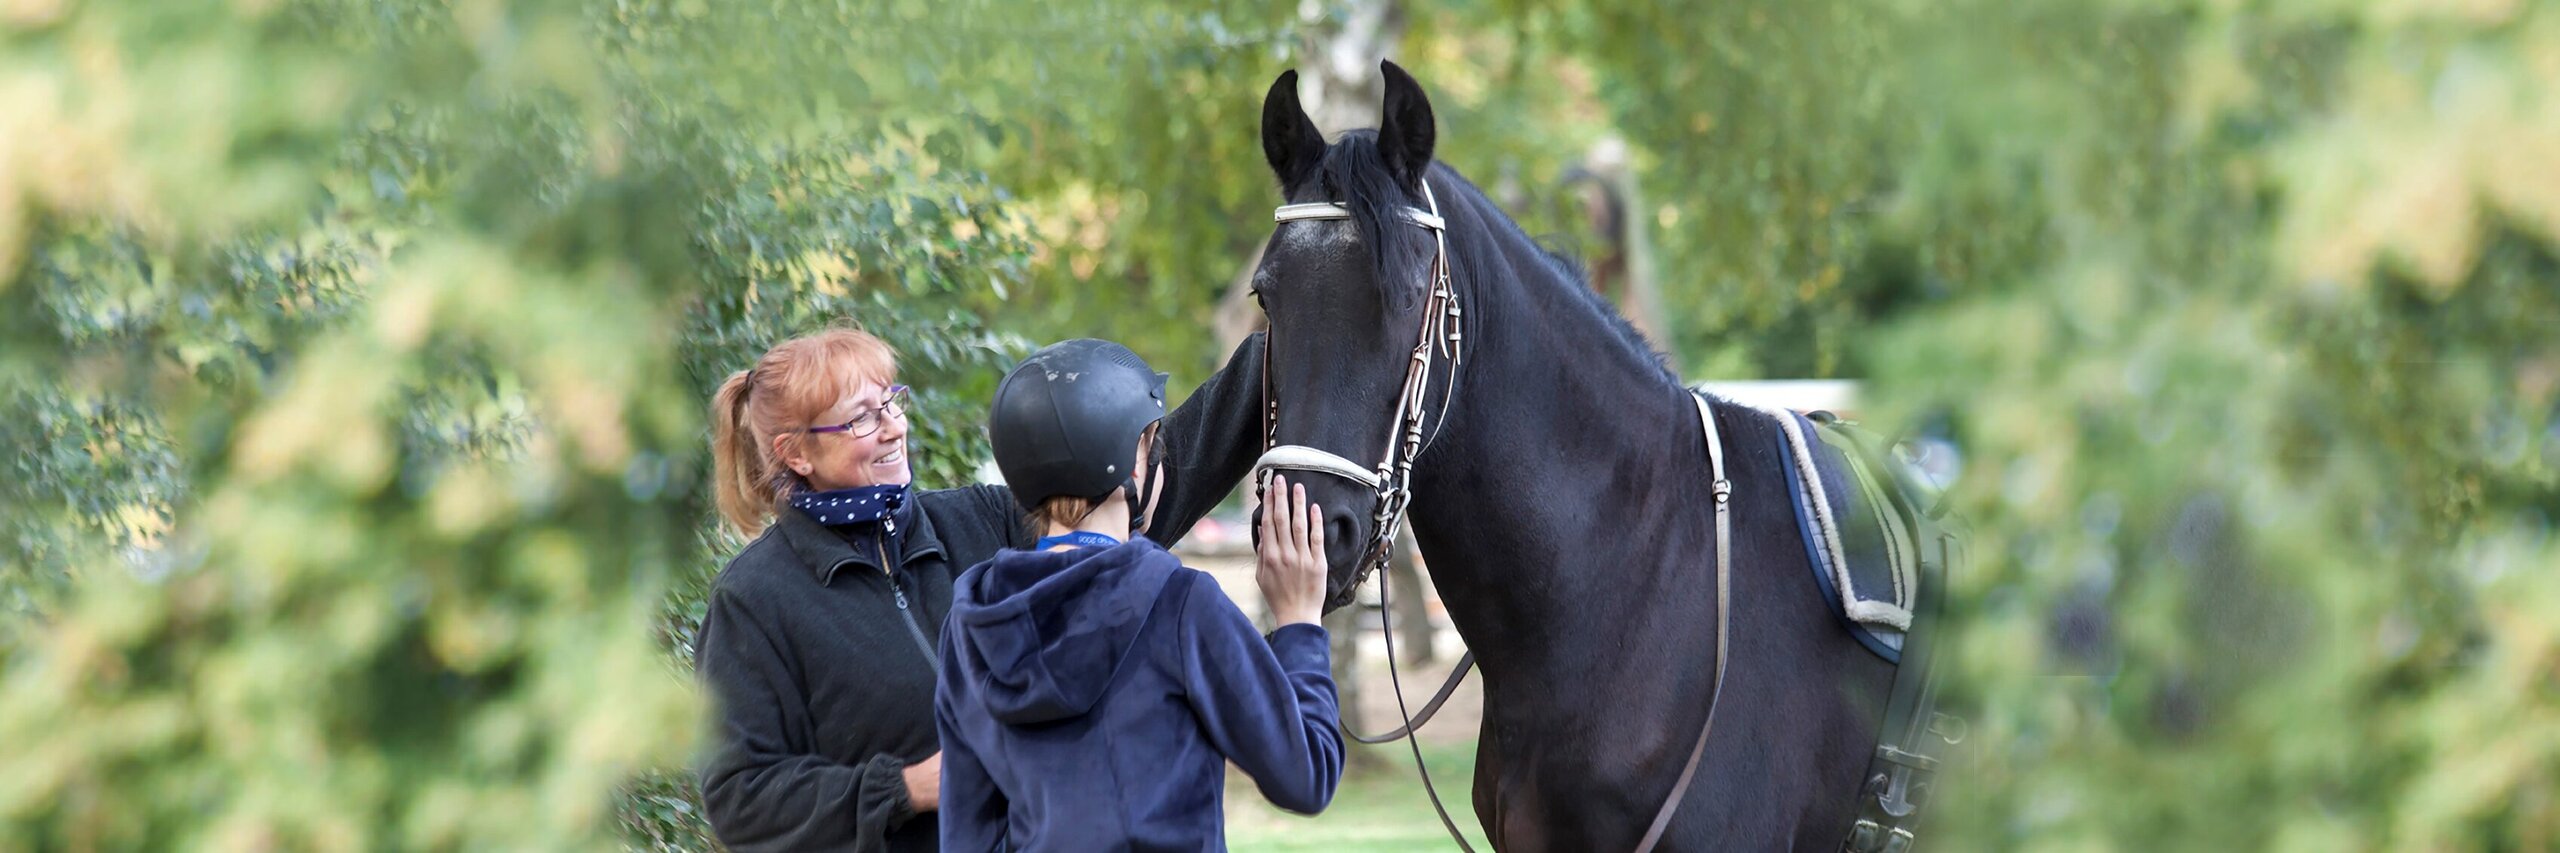 Begegnung und Berührung von Pferden als Therapie